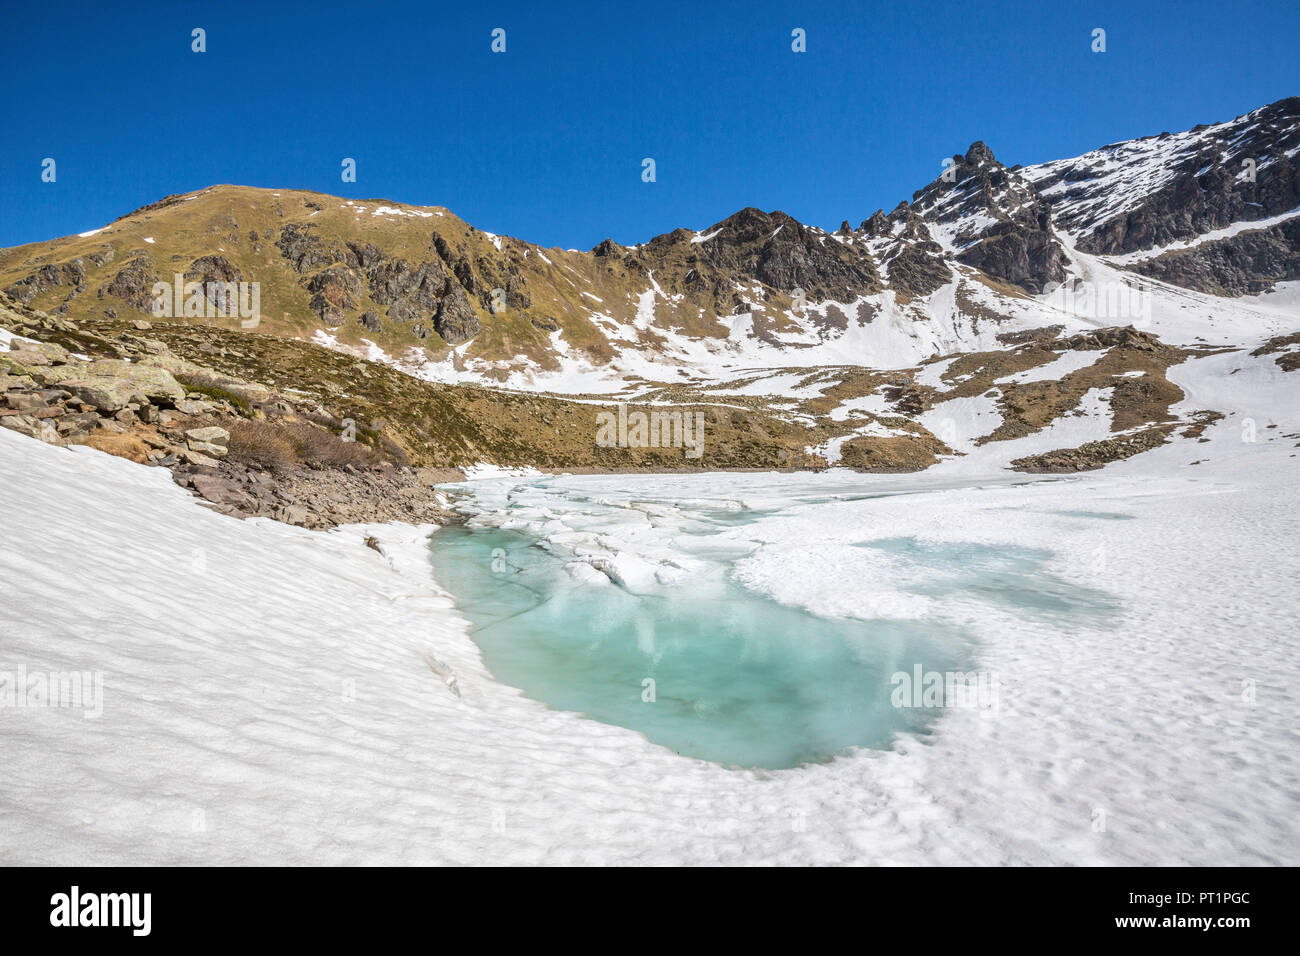 Die Feder Tauwetter offenbart das türkisfarbene Wasser von Laj dal Teo Puschlav Kanton Graubünden Schweiz Stockfoto